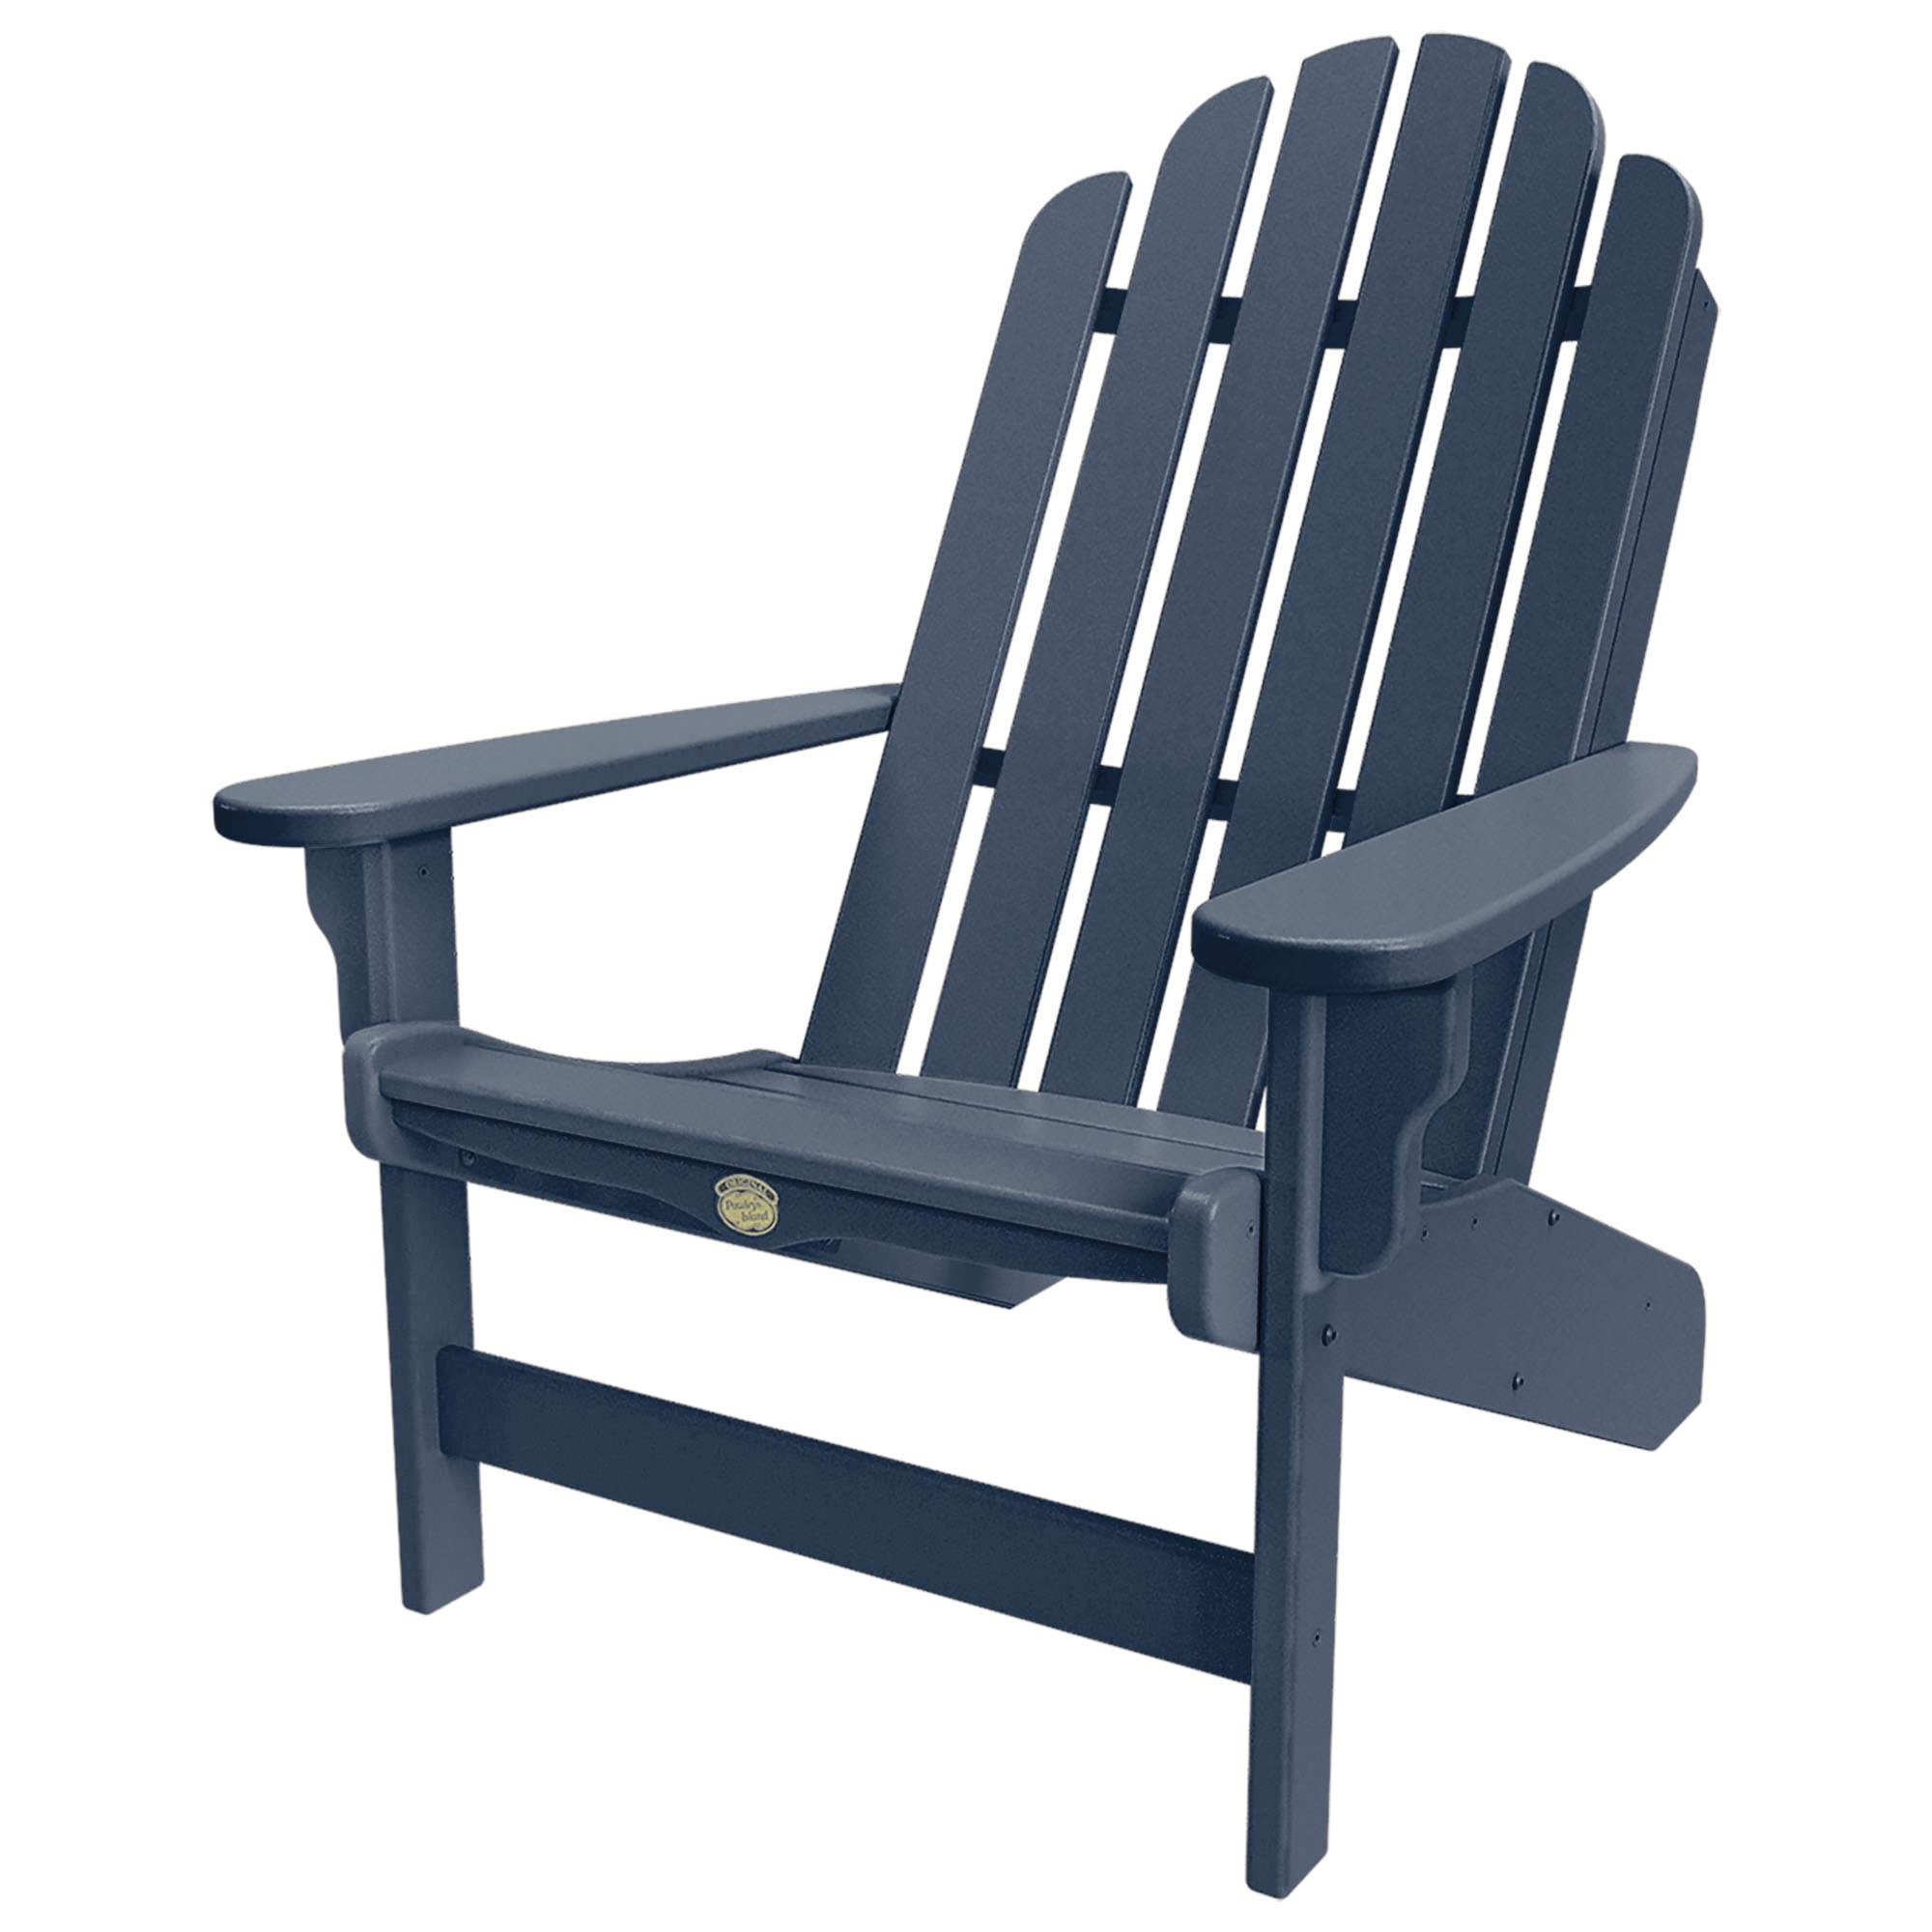 Durawood Essentials Adirondack Chair | Pawleys Island Hammocks